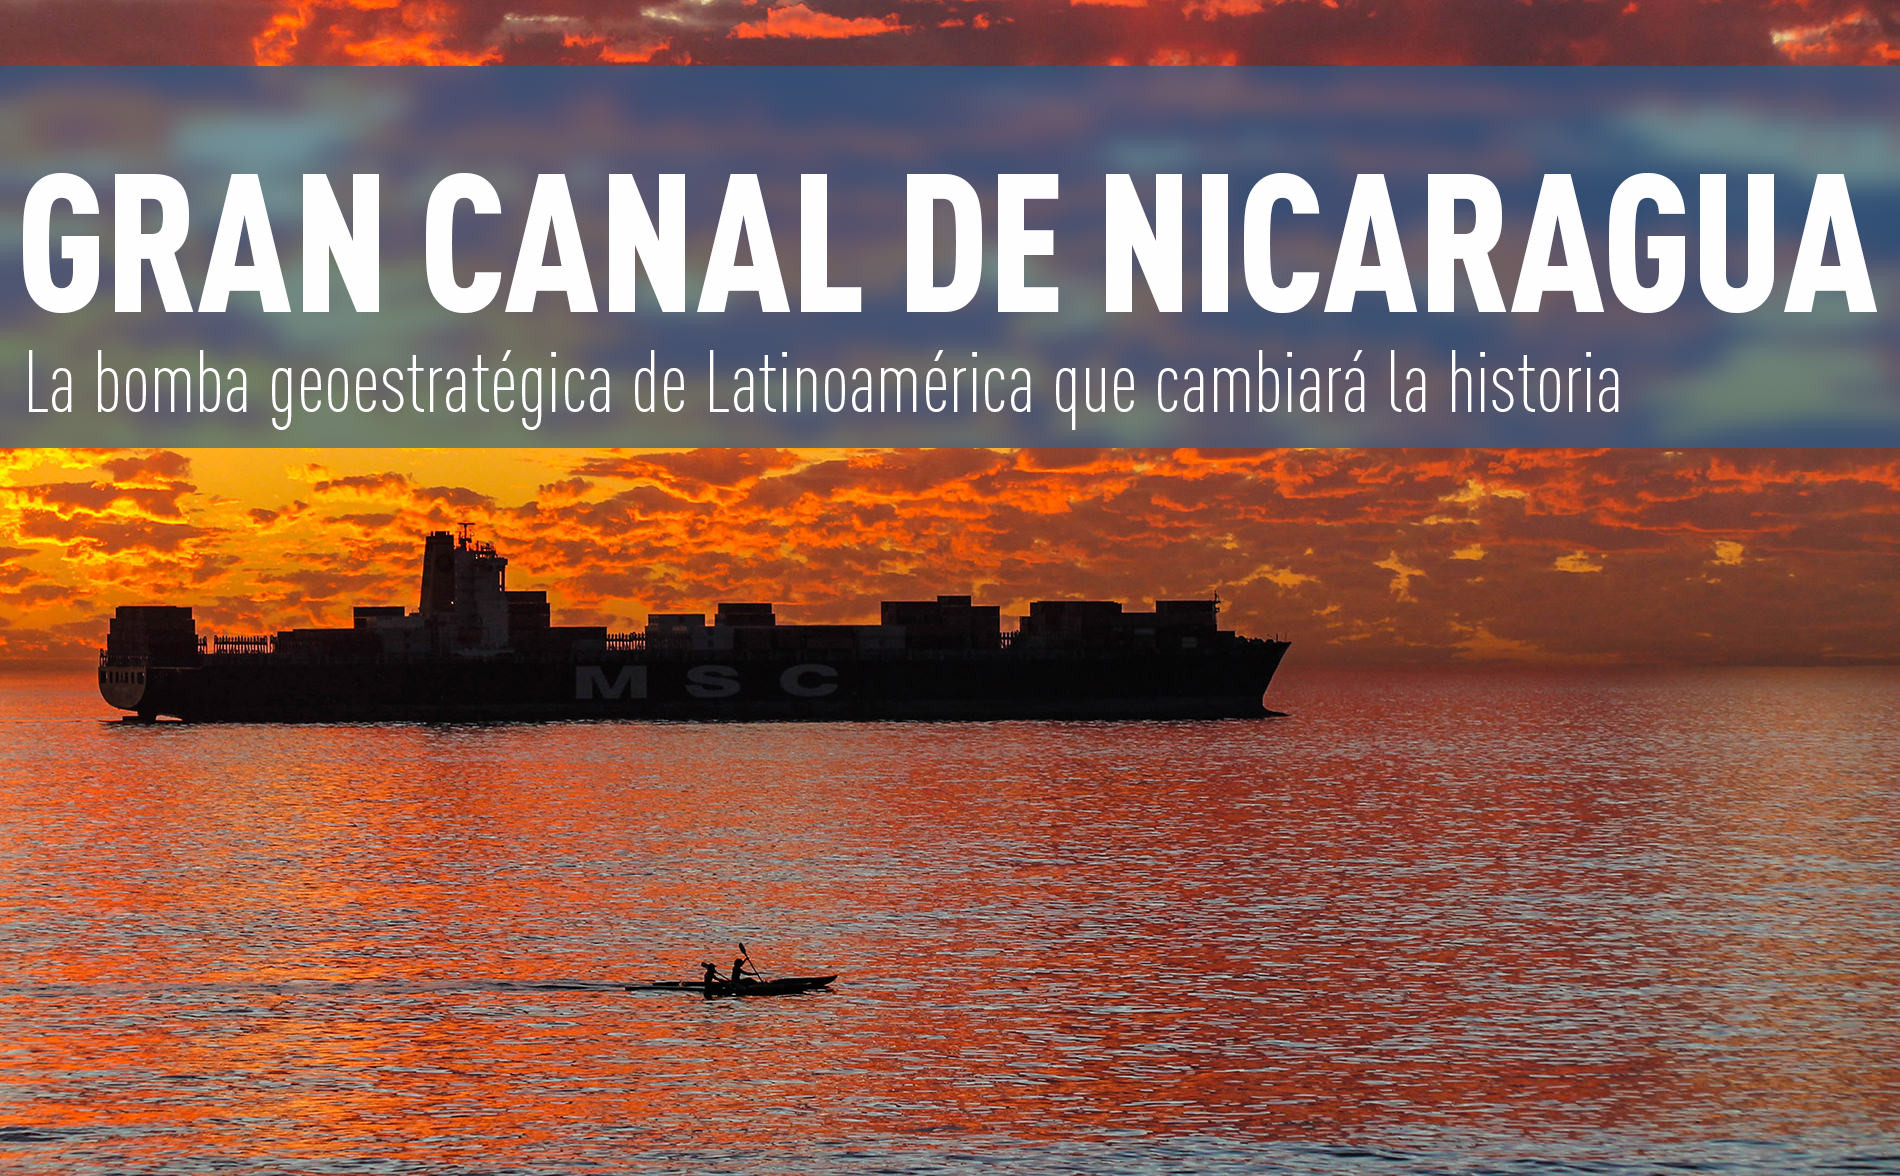 Gran Canal de Nicaragua: La bomba geoestratégica de Latinoamérica que cambiará la historia